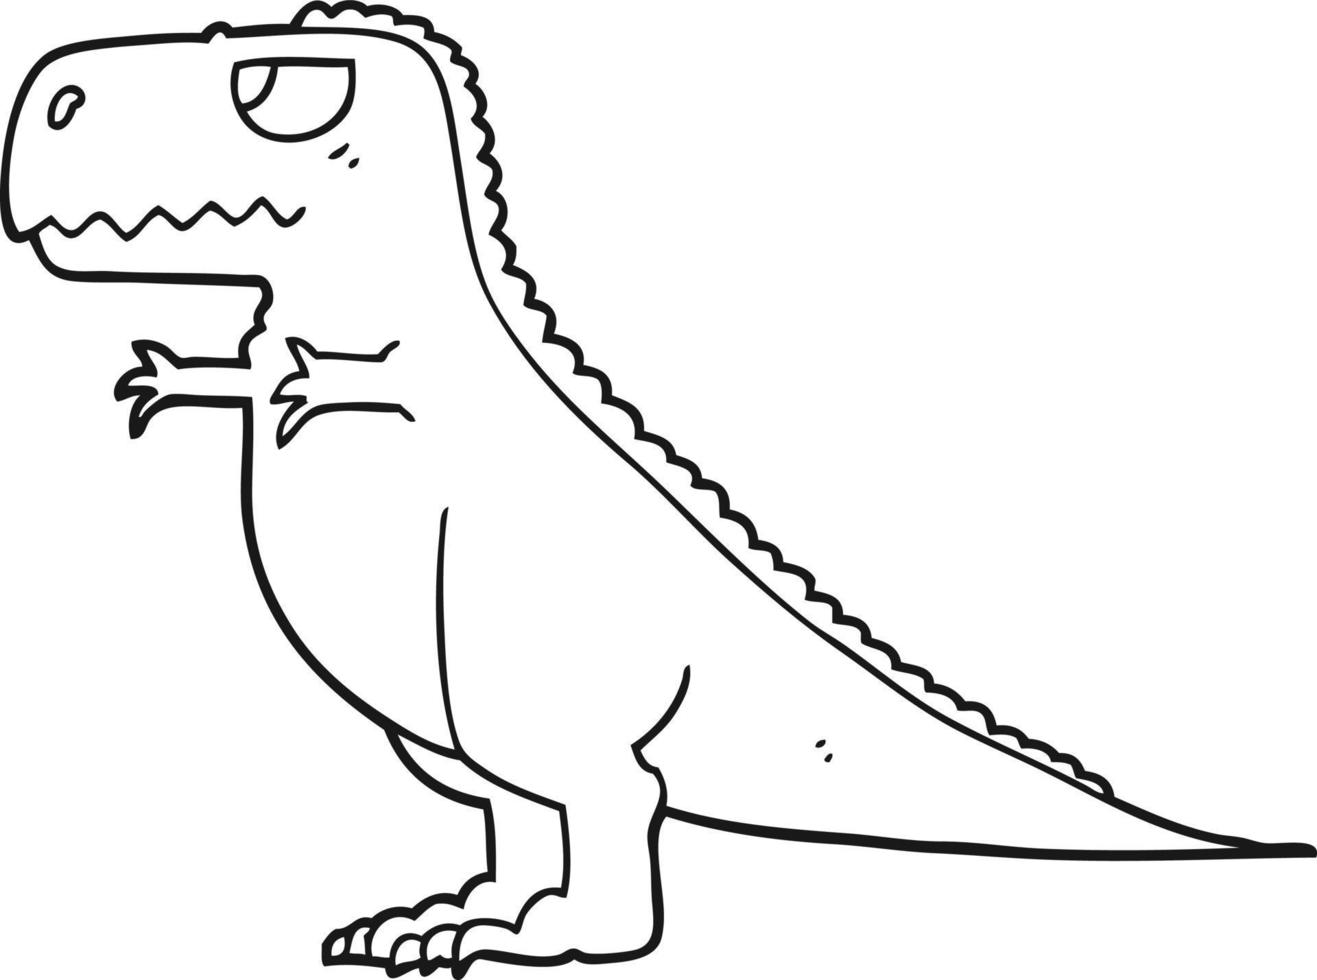 linea disegno cartone animato dinosauro vettore